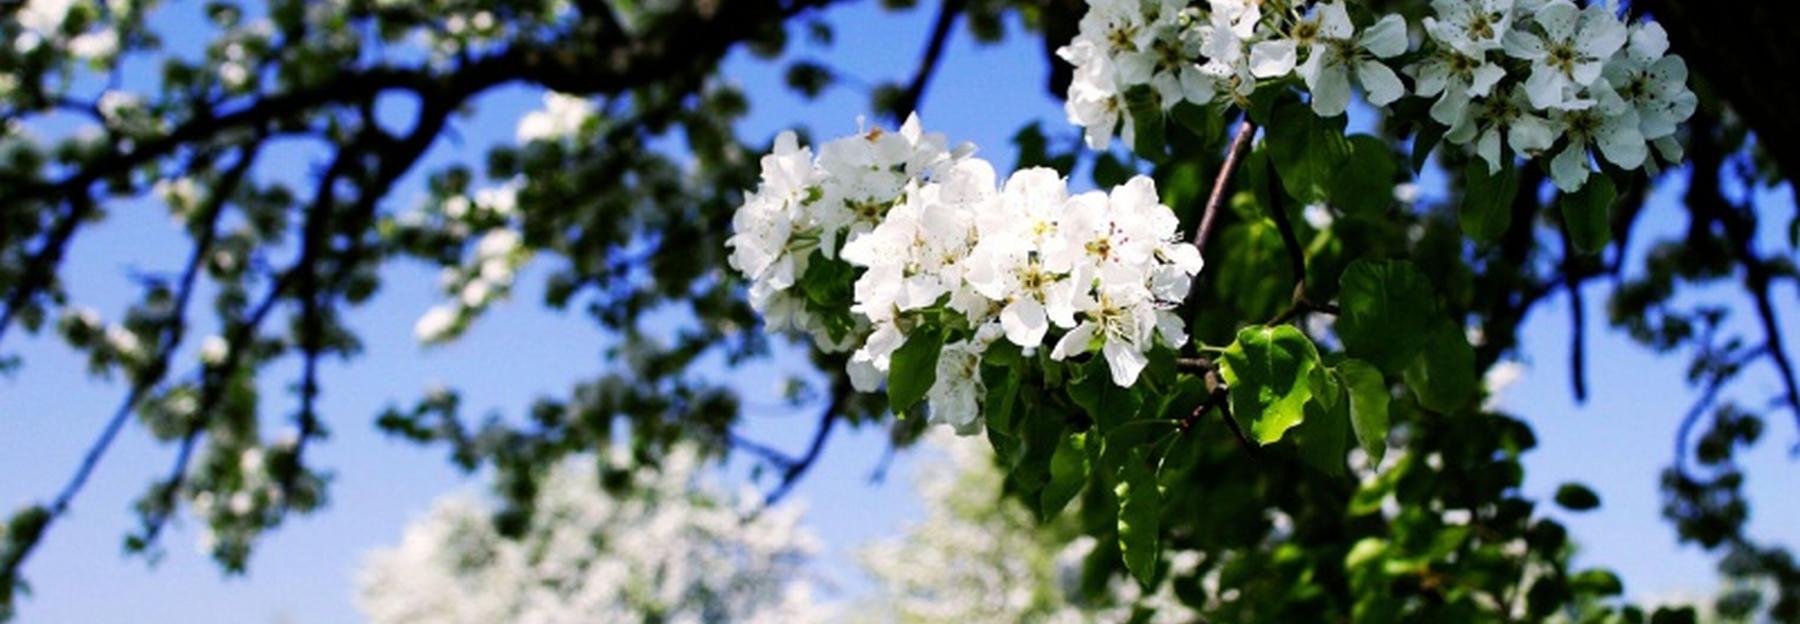 Birn-Baum-Blüte in der Streuobstwiese 